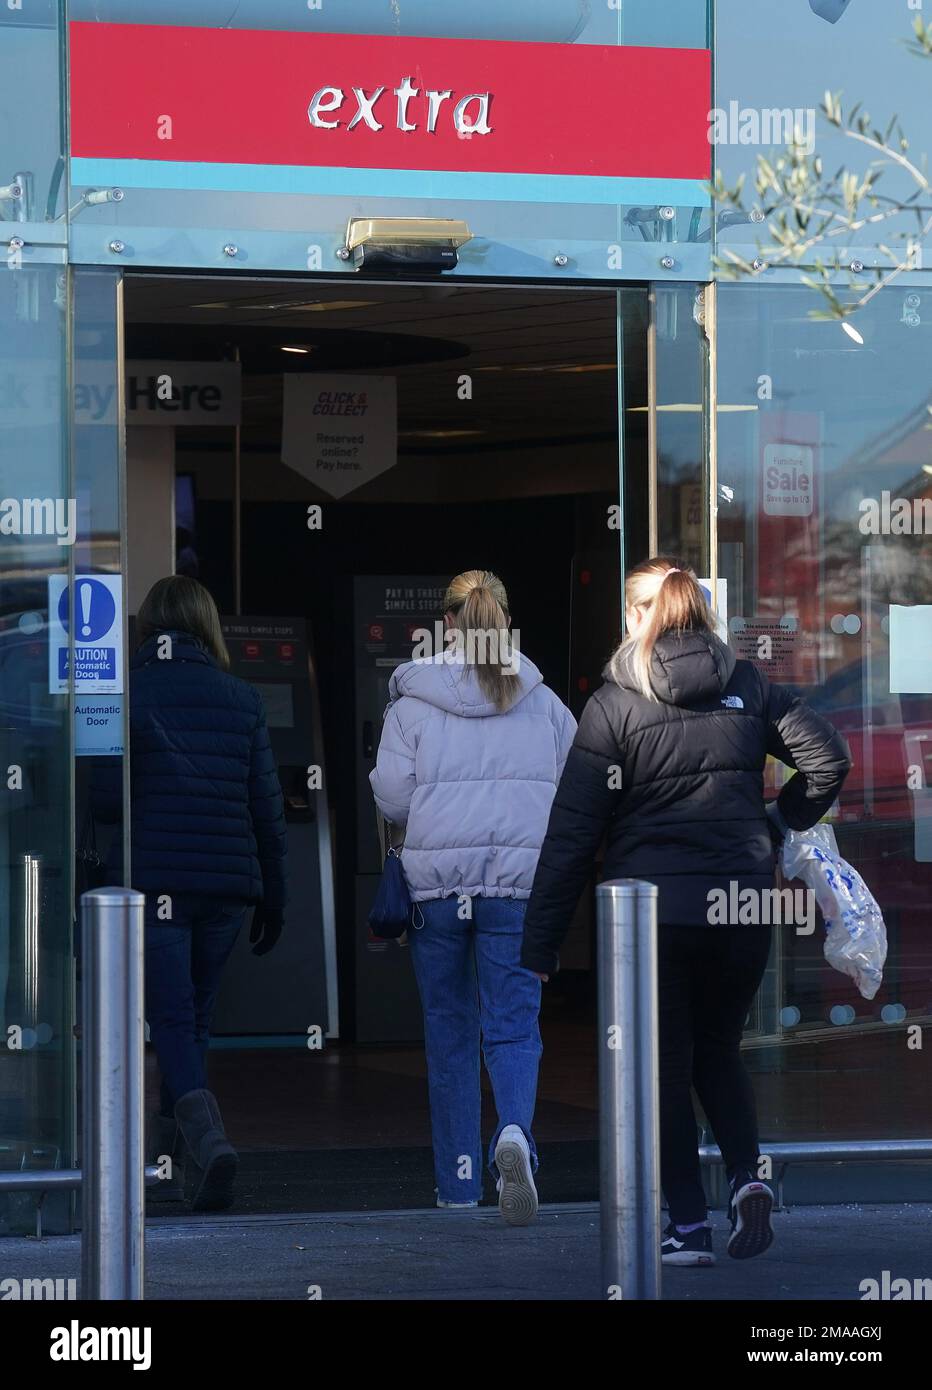 Le persone entrano in un negozio Argos a Santry, Dublino. Argos ha annunciato piani per chiudere tutti i suoi negozi nella Repubblica d'Irlanda entro questa estate, una mossa che vedrà centinaia di posti di lavoro assestati. Data immagine: Giovedì 19 gennaio 2023. Foto Stock